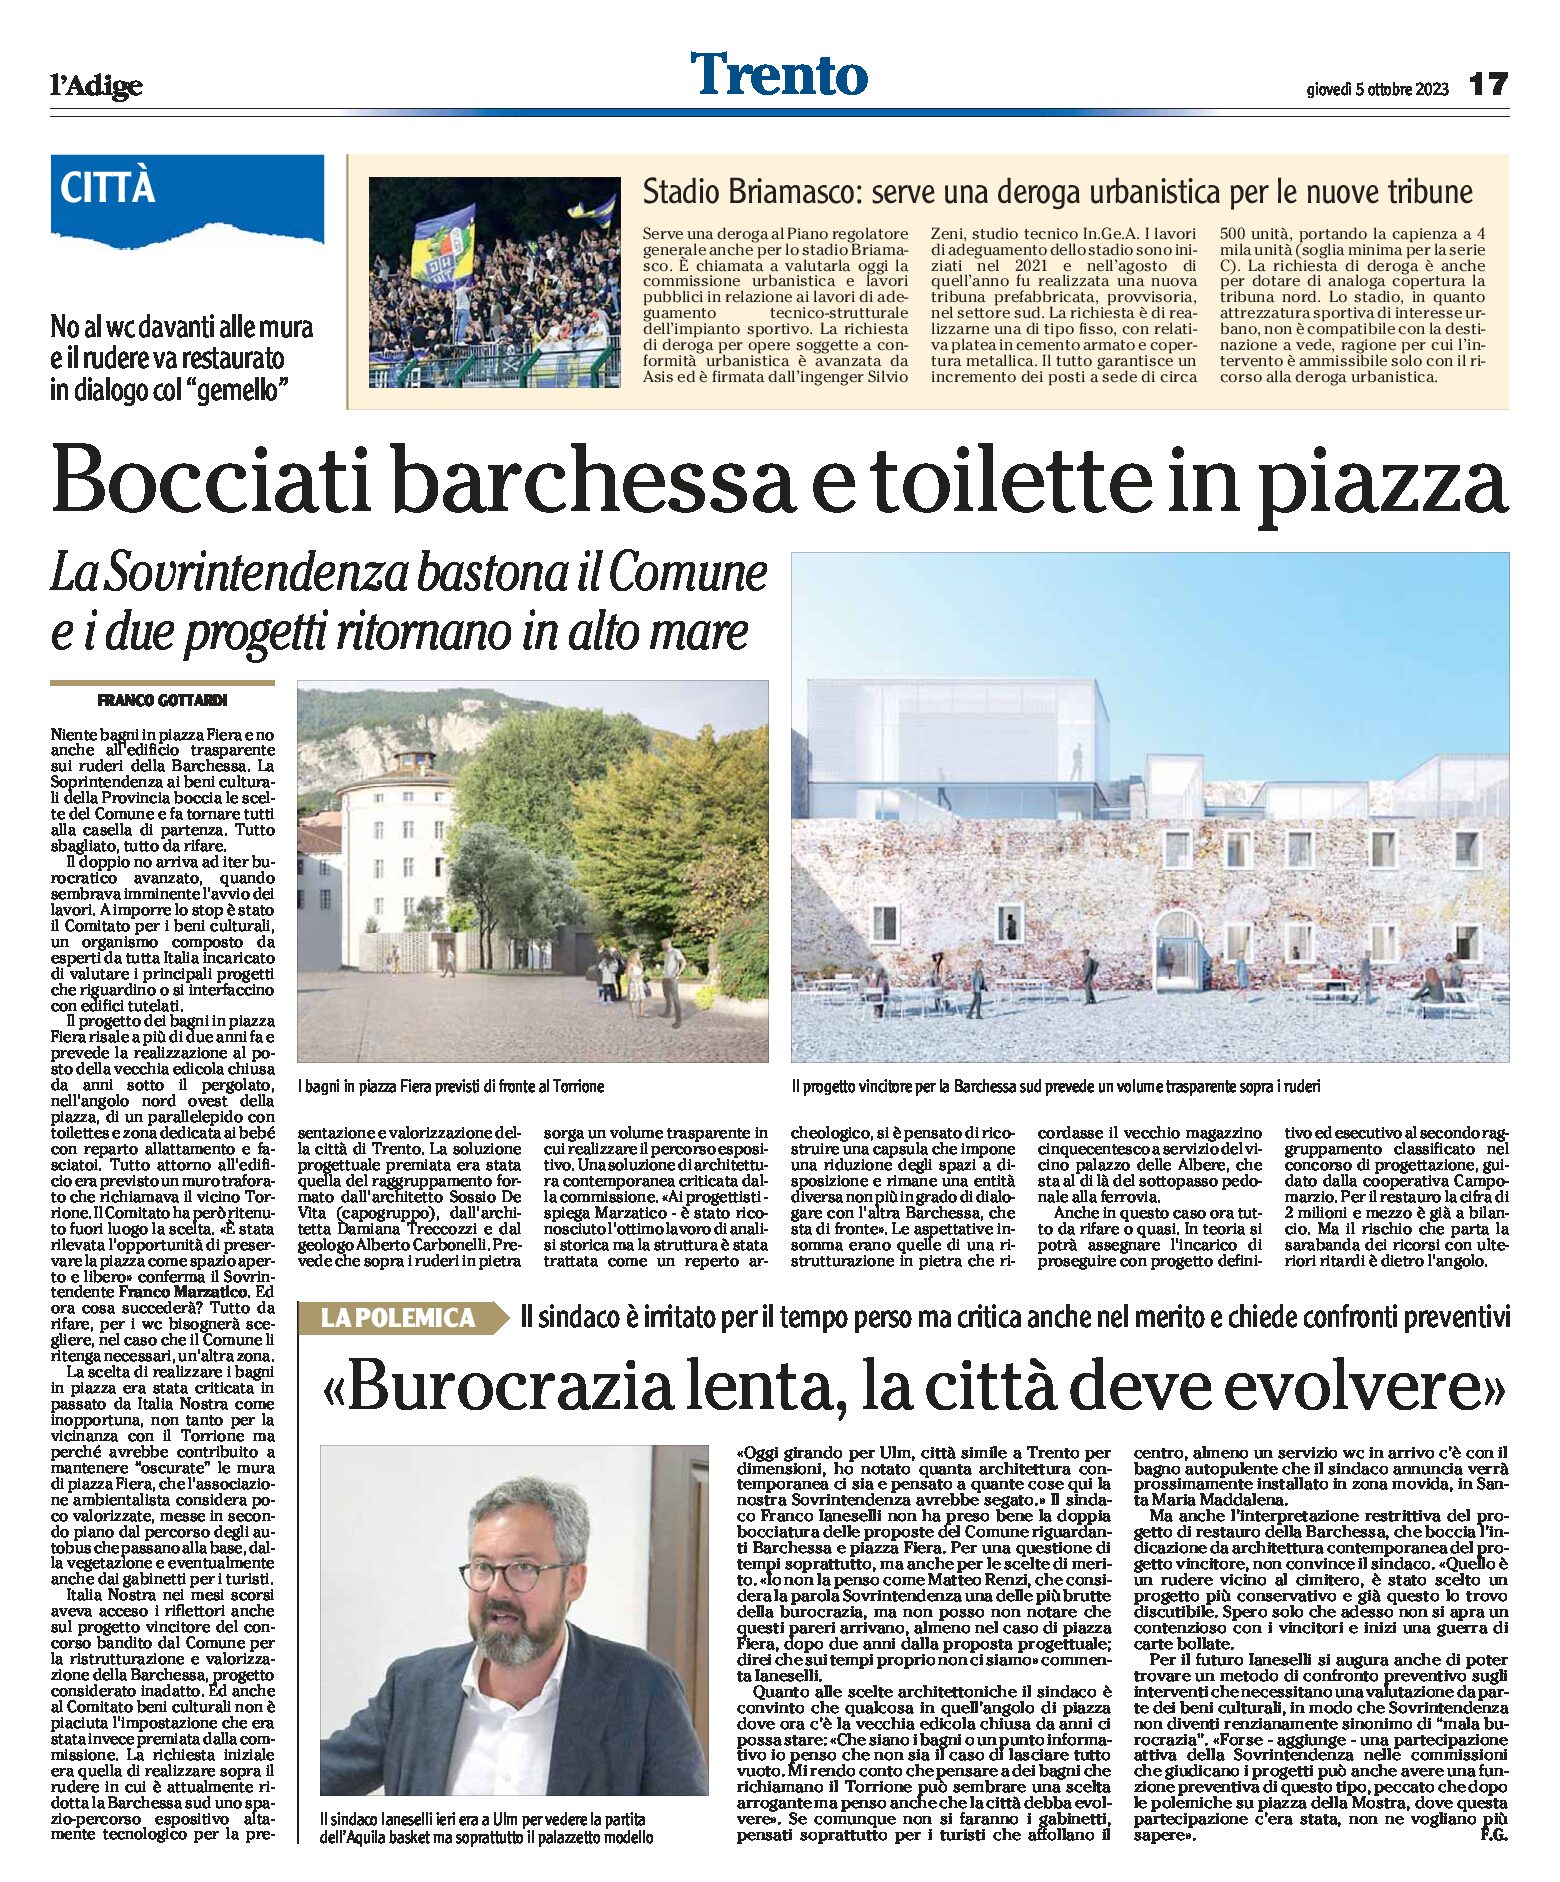 Trento: bocciati barchessa e toilette in piazza. Il sindaco Ianeselli “burocrazia lenta, la città deve evolvere”